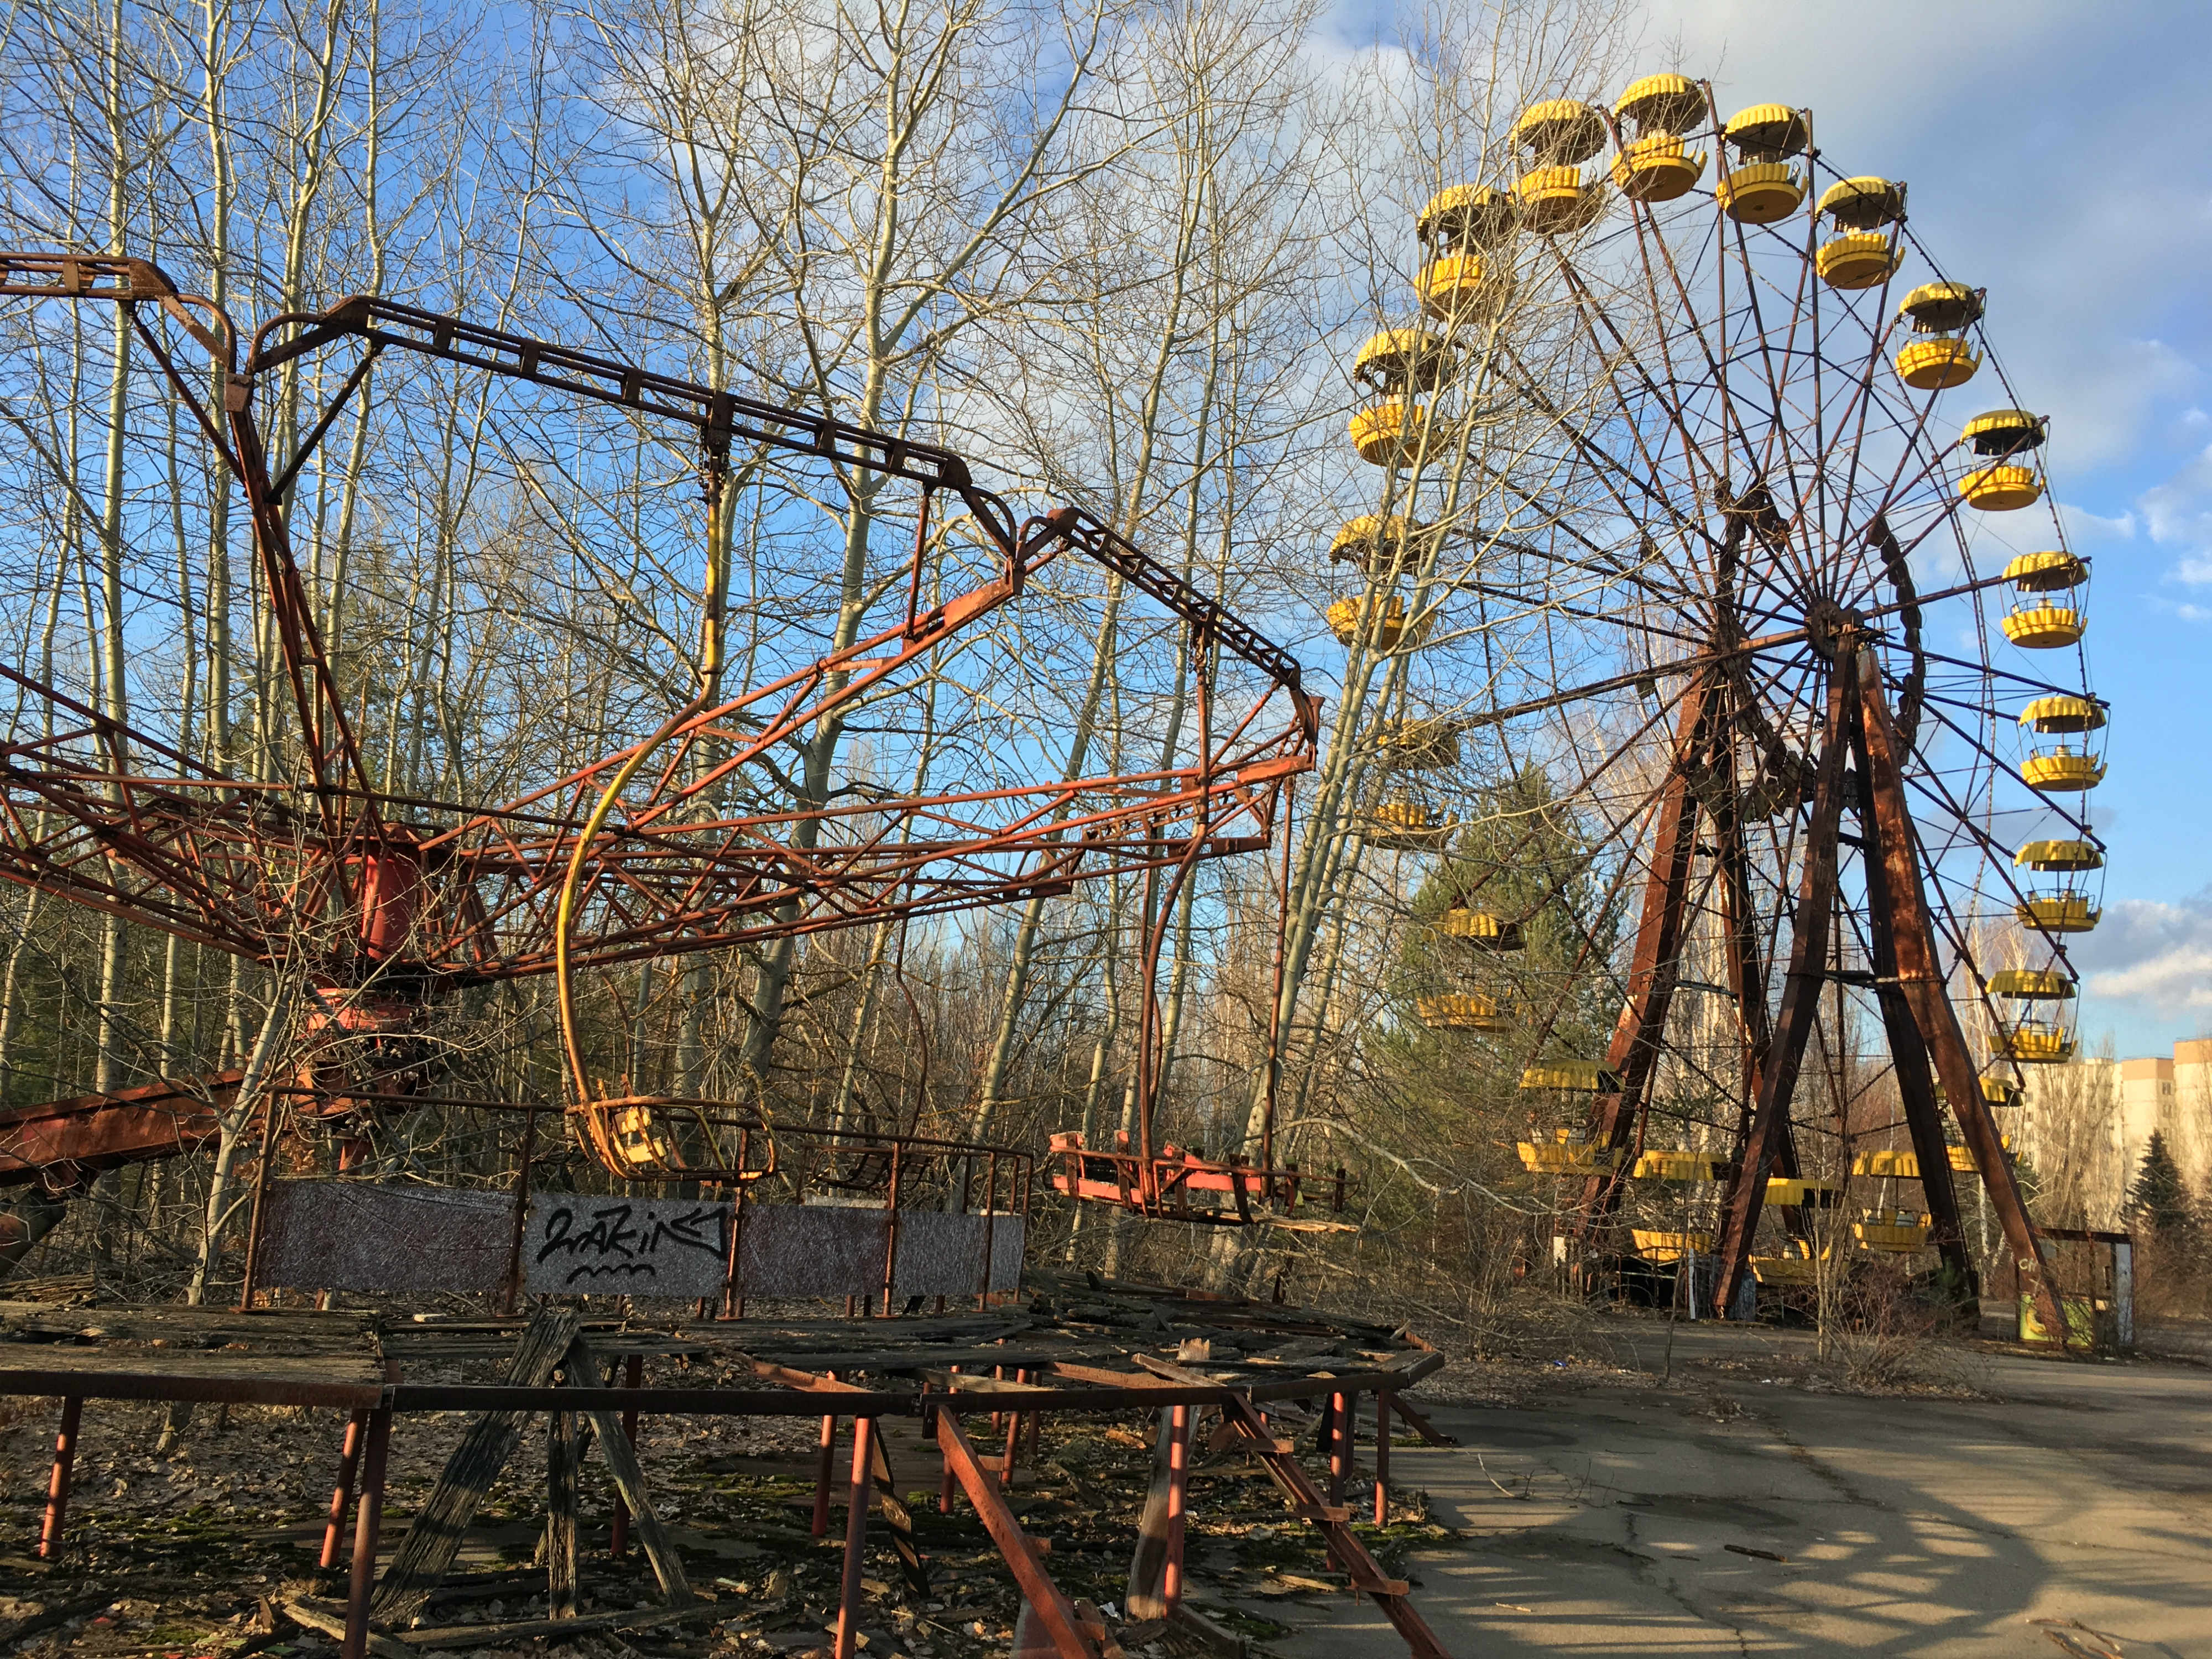 chernobyl photo essay